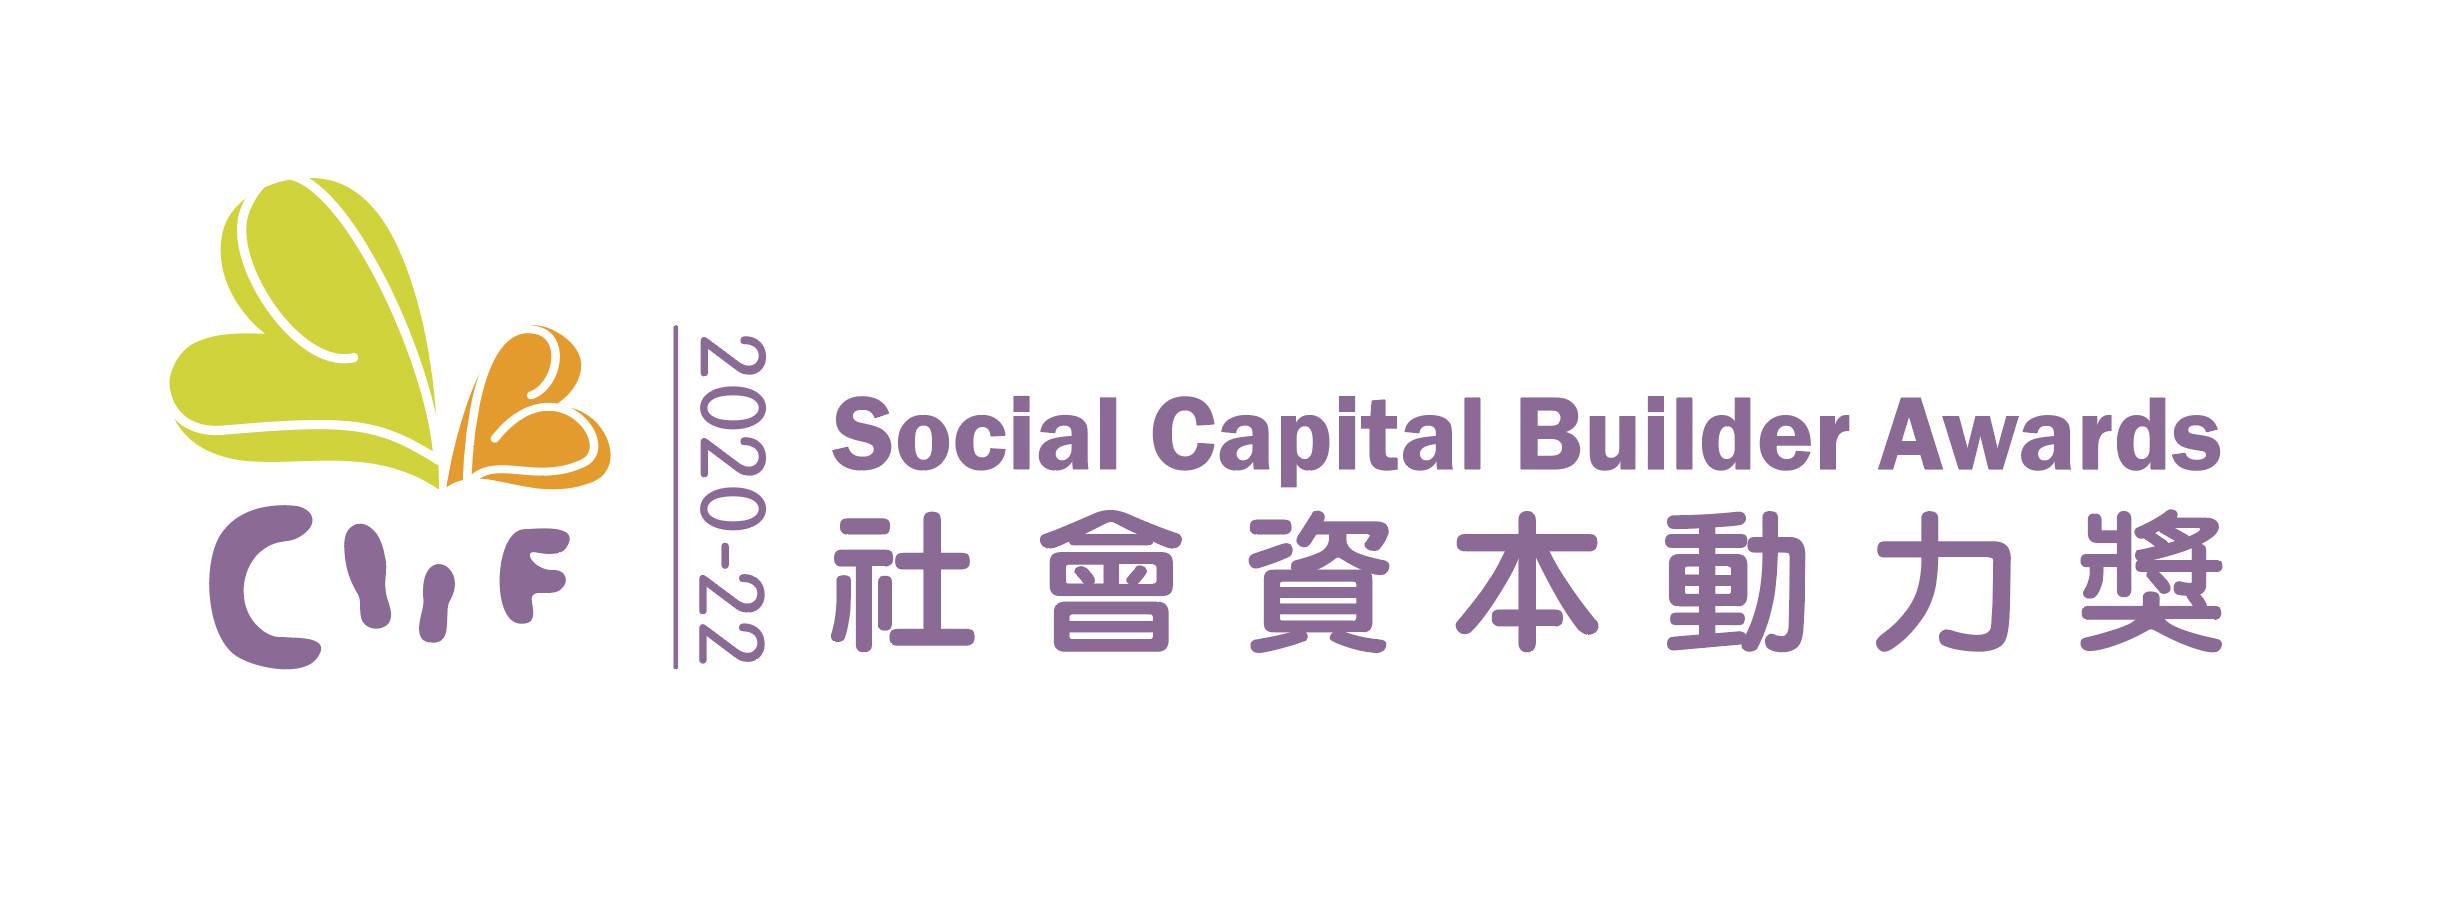 在2018及2020年，于劳工及福利局辖下的社区投资共享基金举办的“社会资本动力奖”嘉许计划中，获颁“社会资本动力标志奖”